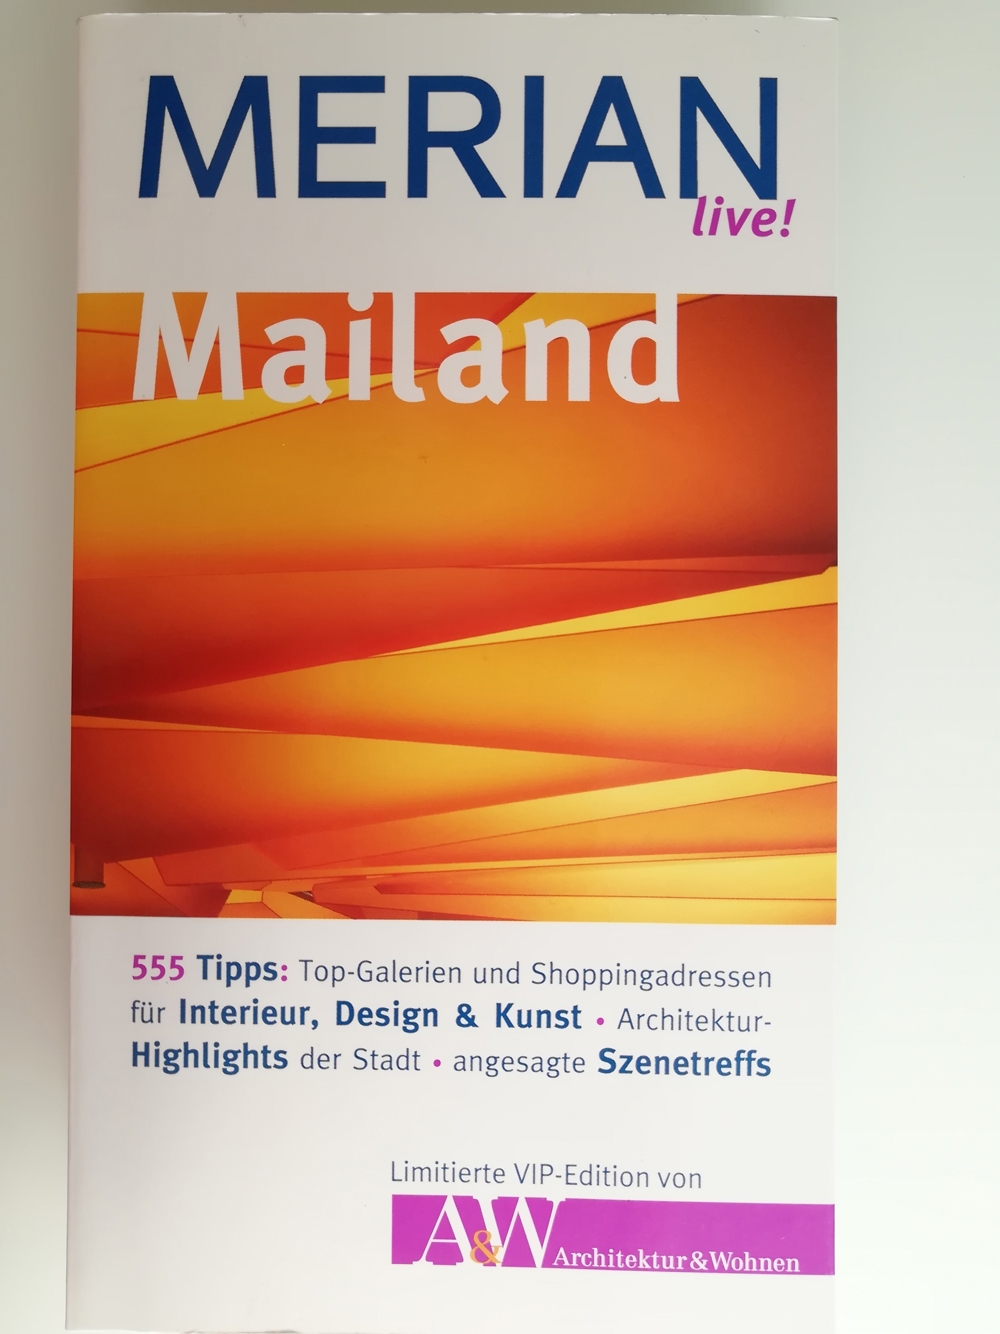 MERIAN live! Mailand Kartenatlas im Buch Reiseführer Stadtführer Reise Handbuch Cityplan